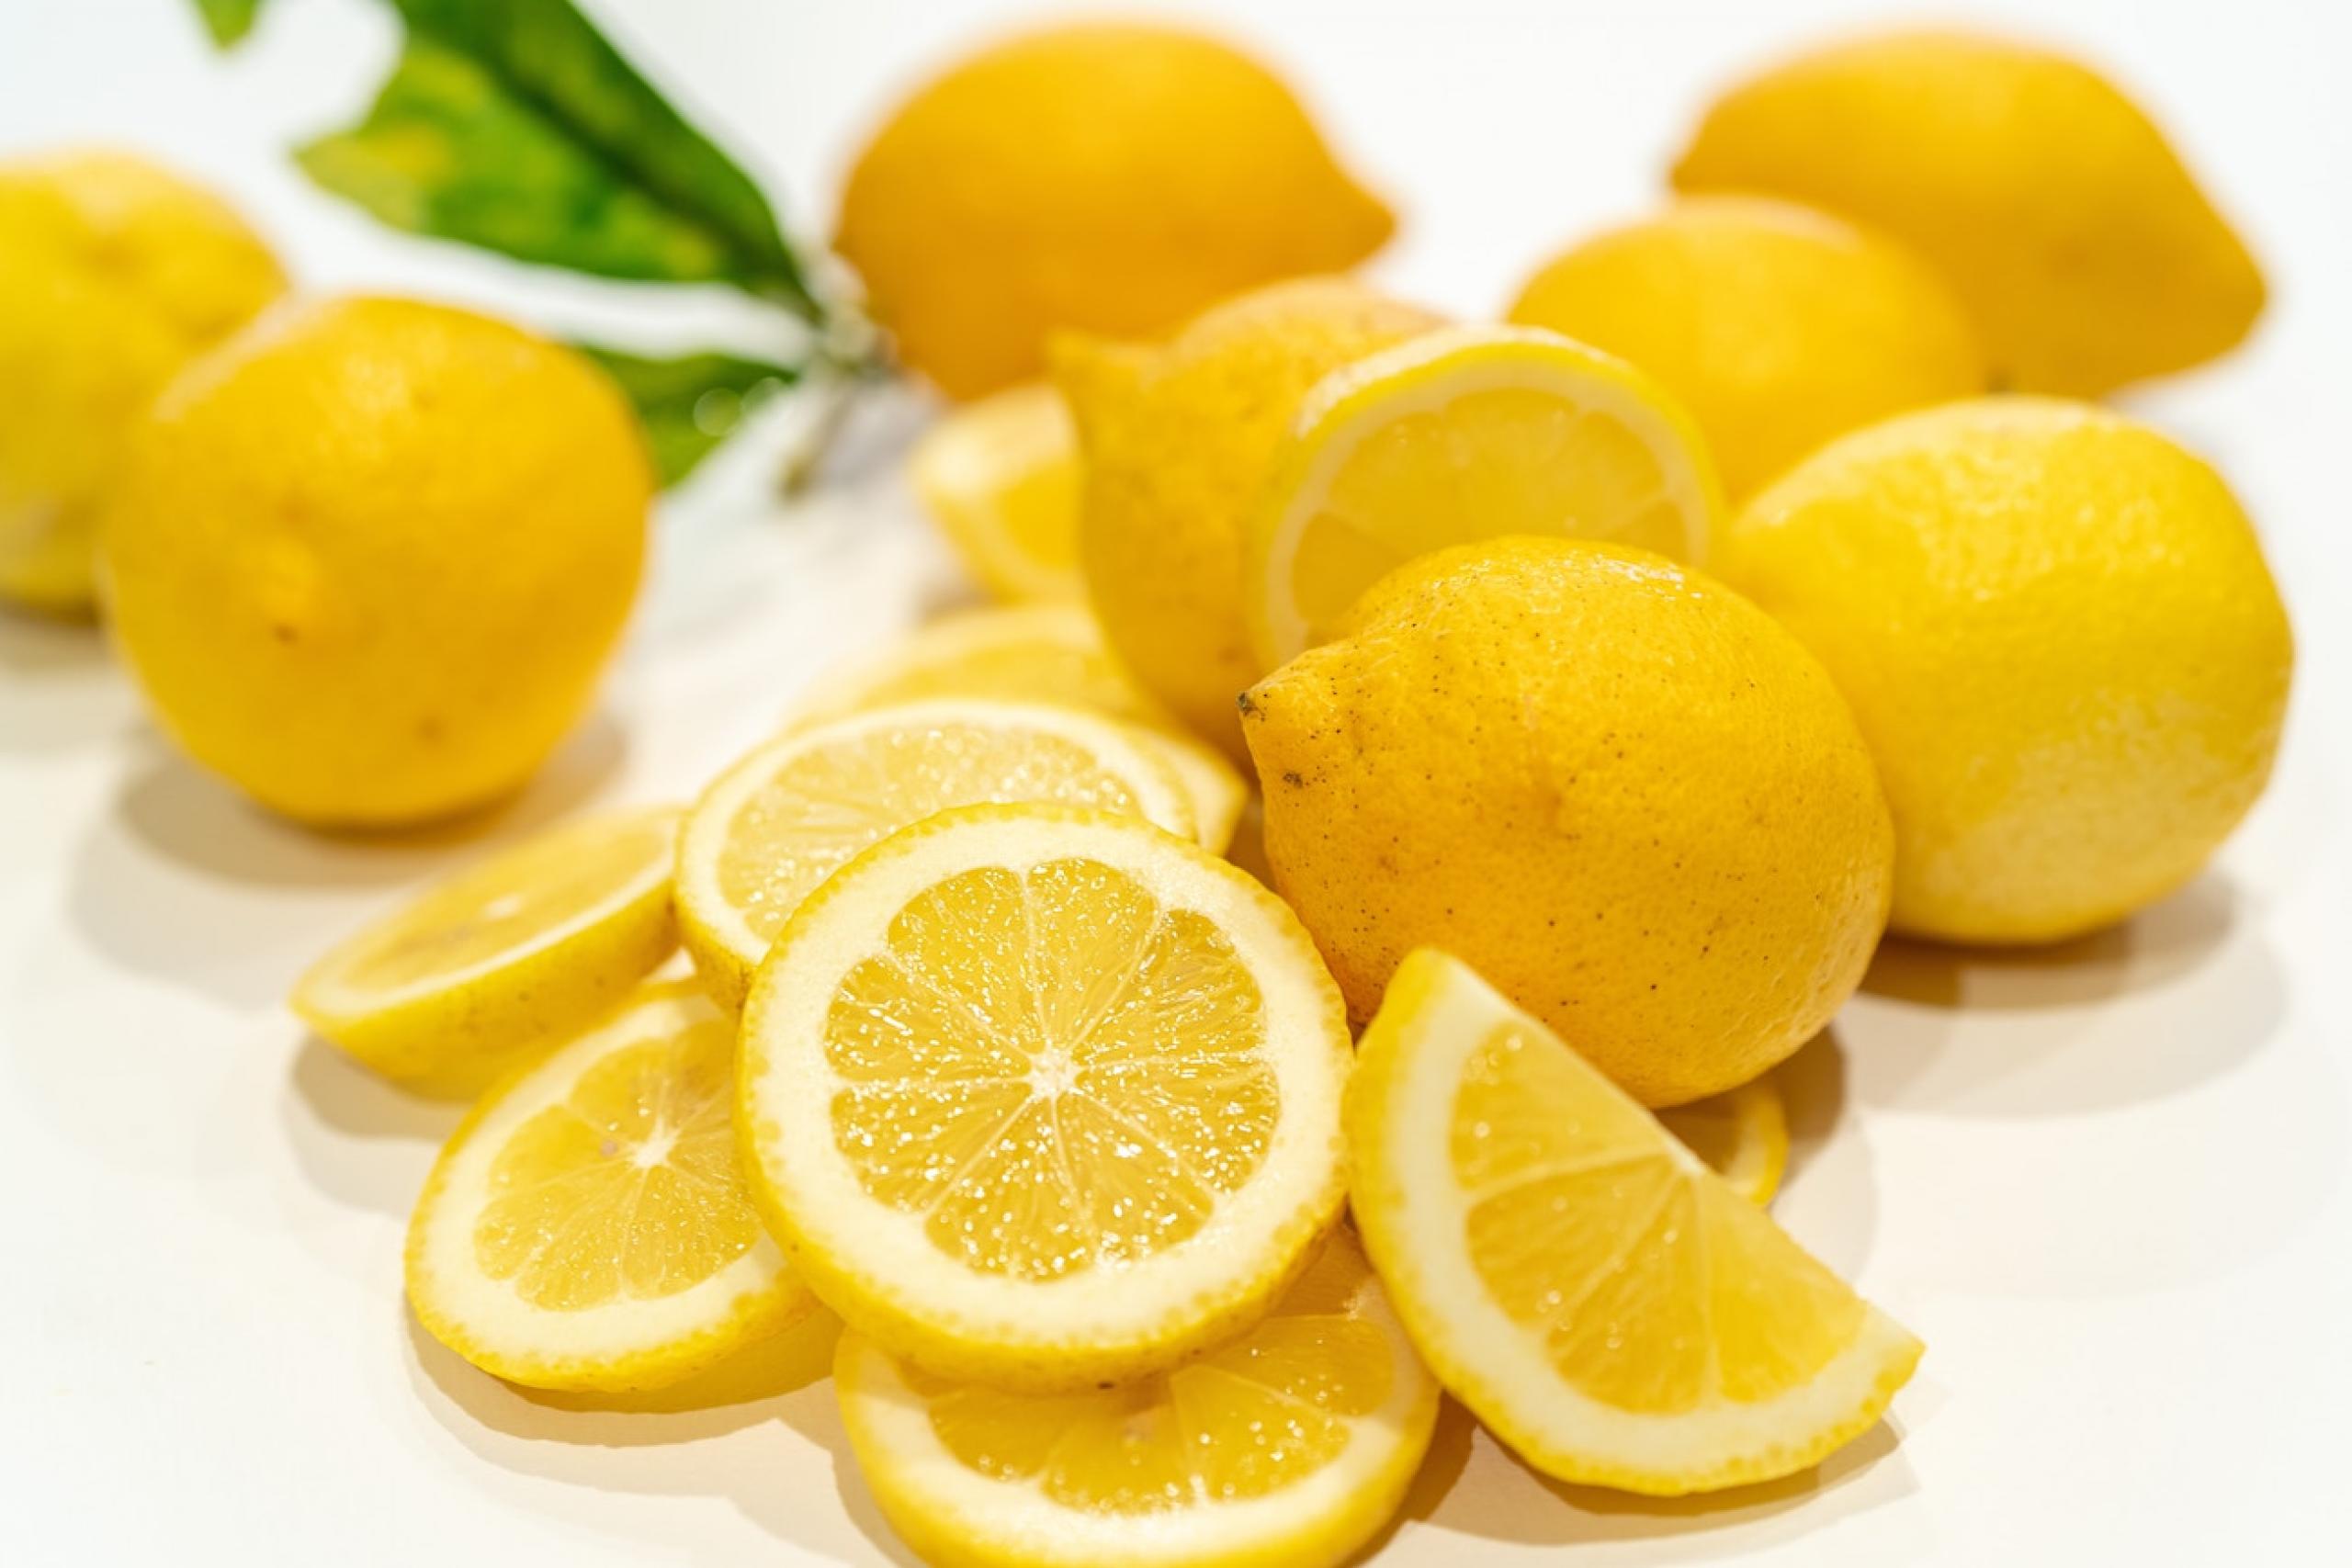 Kyselina citronová pomůže s vařením i úklidem | Apetit Online